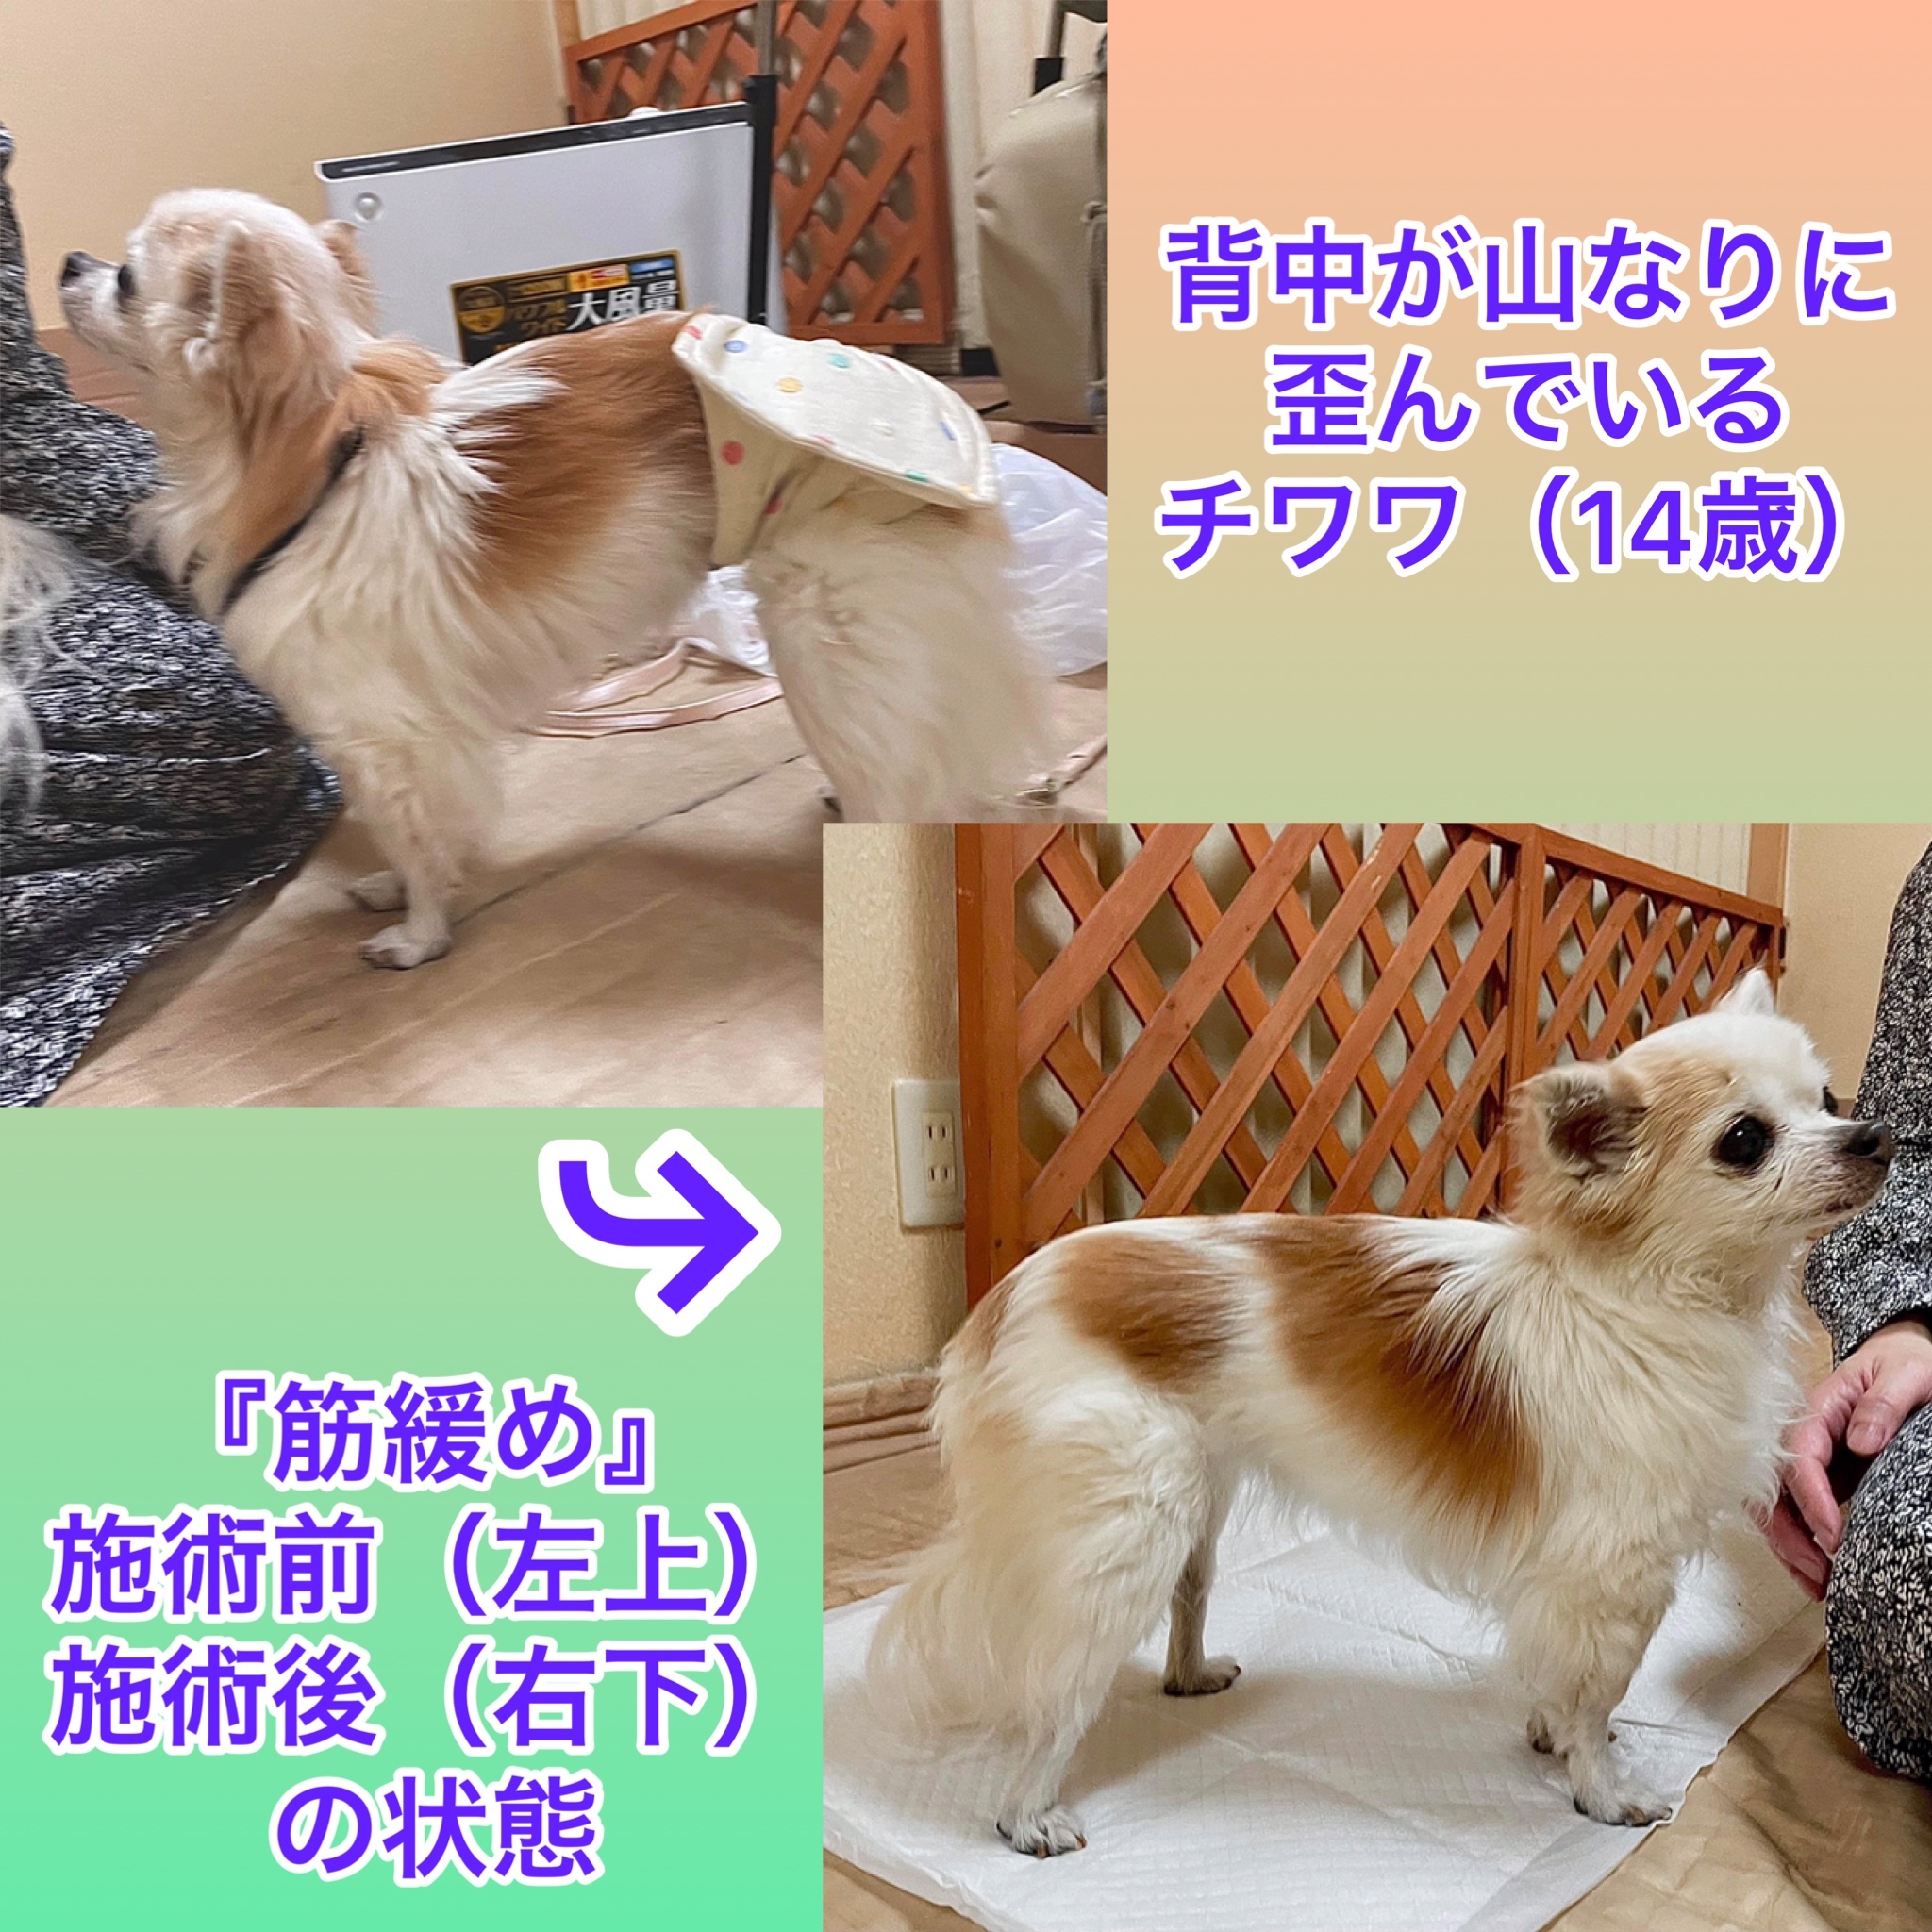 犬の整体マッサージ教室に参加された愛犬さんの施術効果<br>